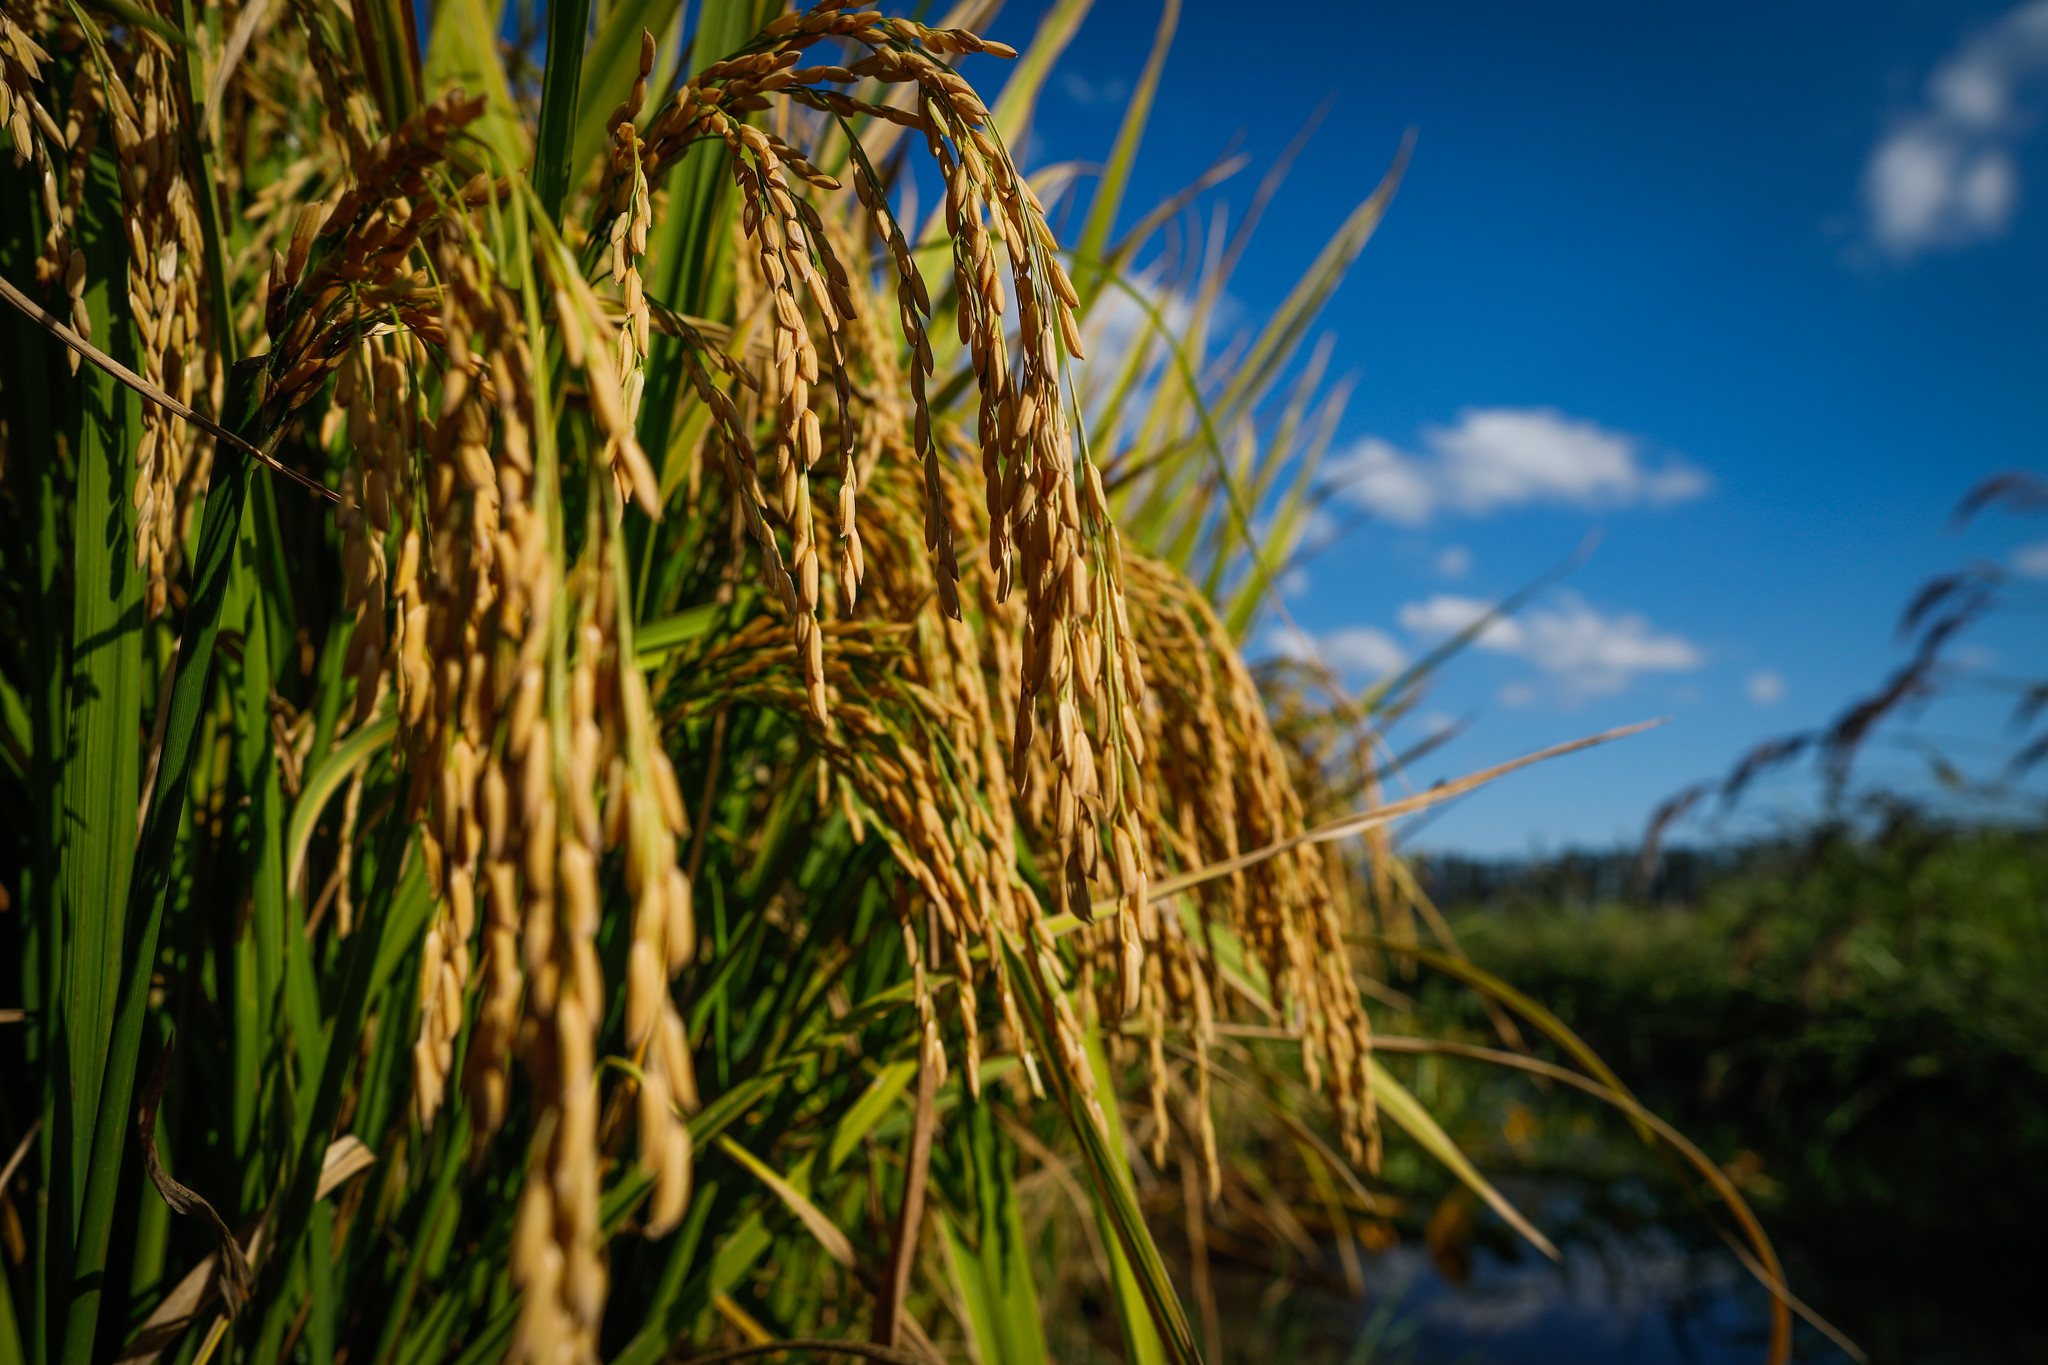 Estudo quantifica emissão de metano em arroz irrigado